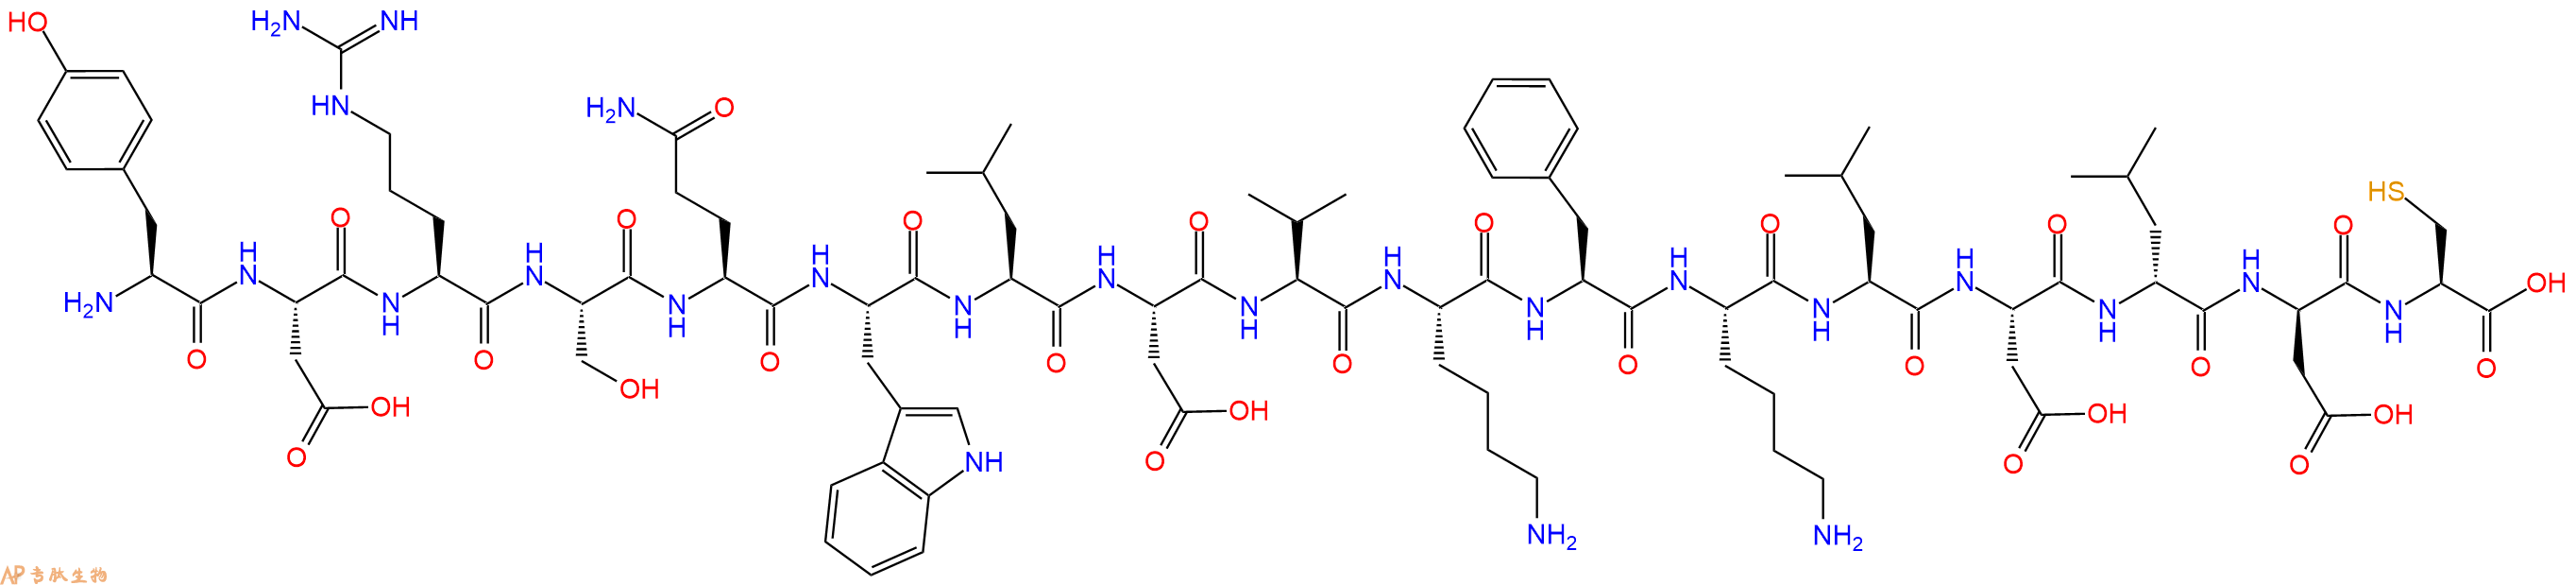 专肽生物产品十七肽YDRSQWLDVKFKLD-DLeu-DAsp-C